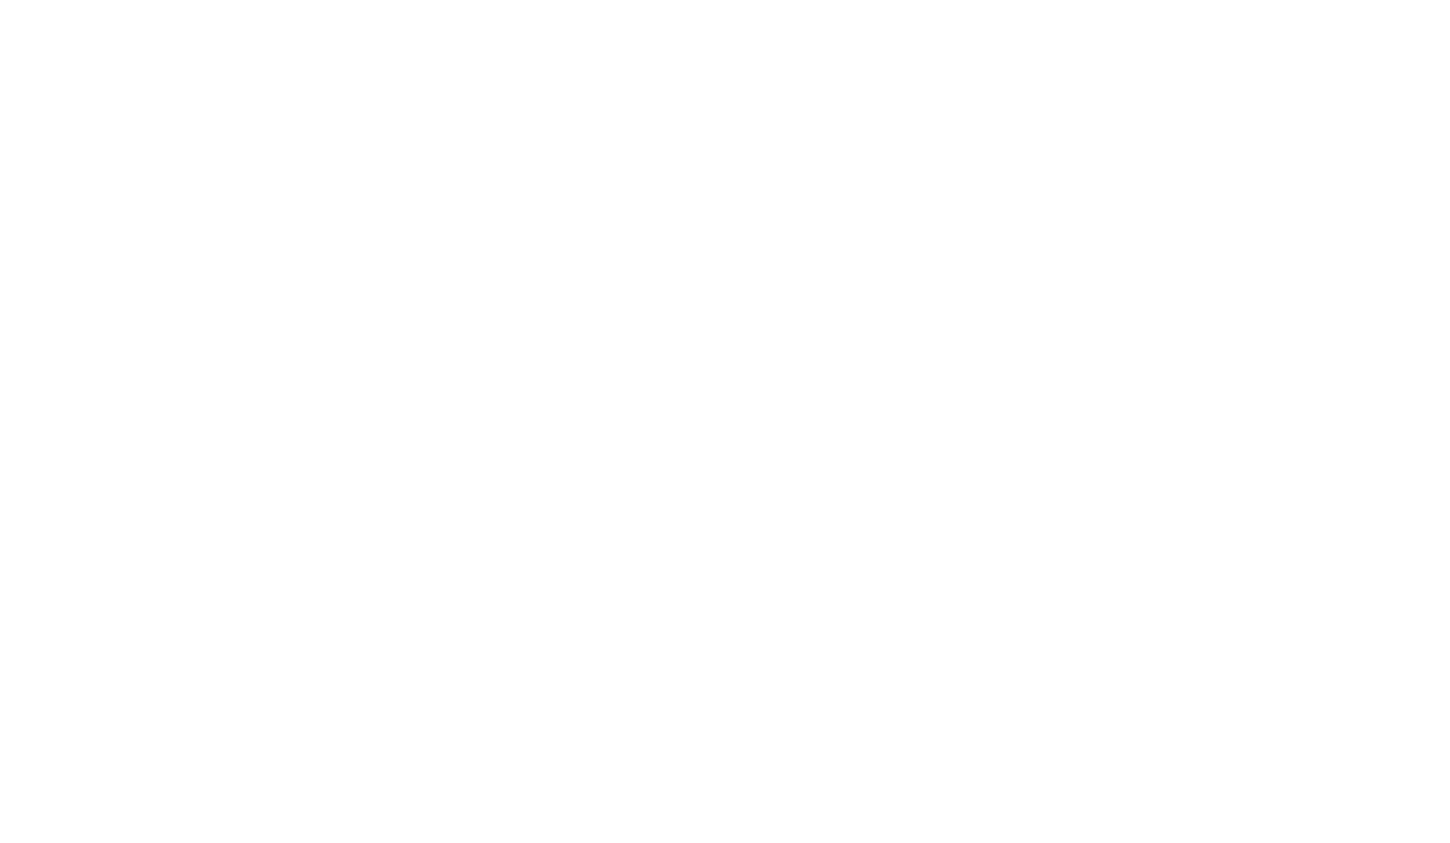 Bradford Digital Solutions